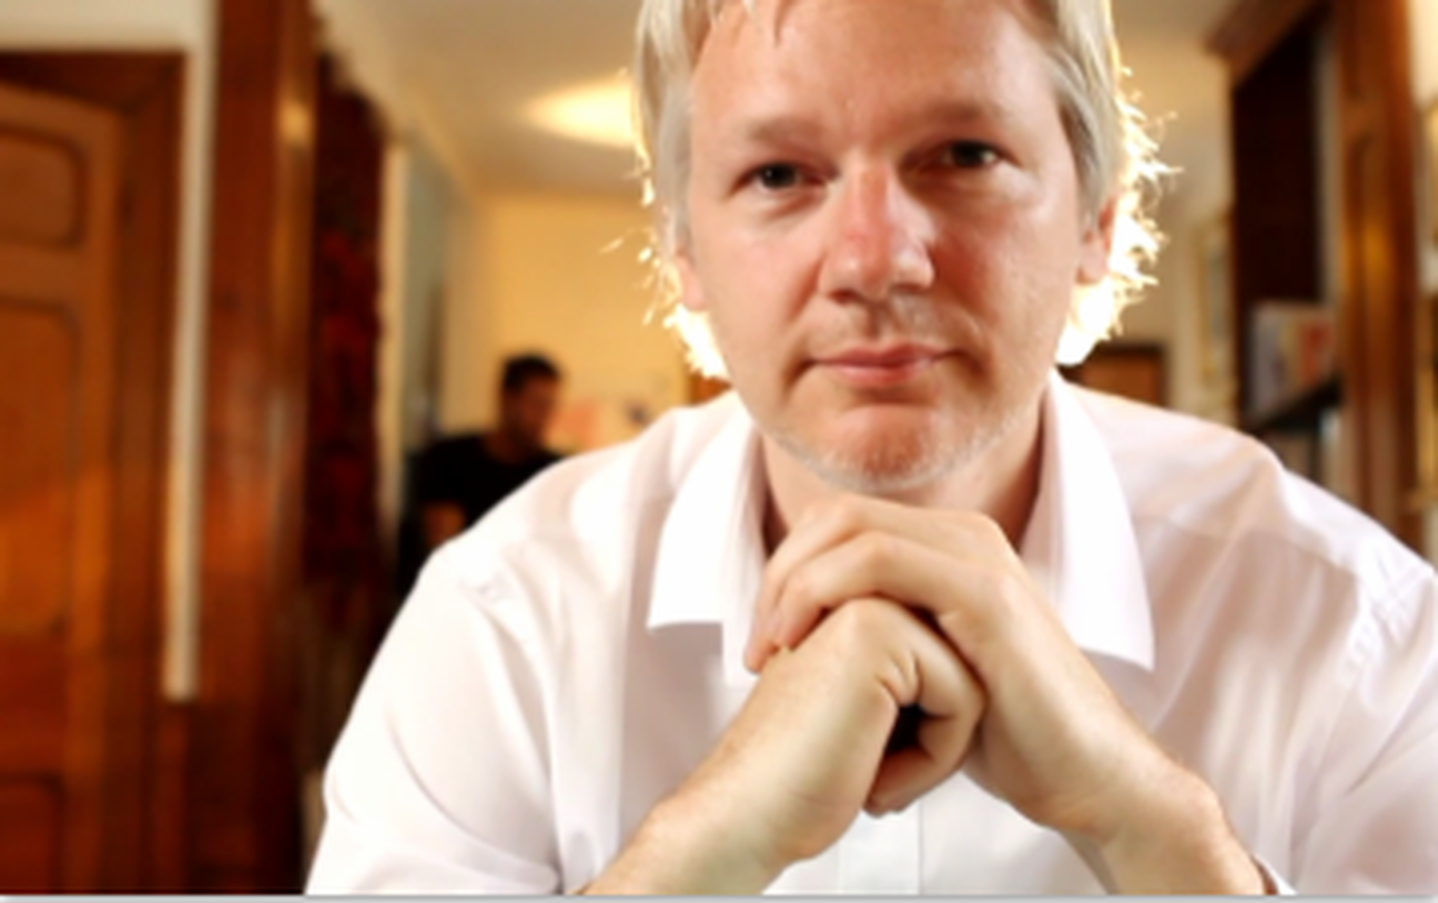 Varoufakis y otras Personalidades piden a Ecuador levante restricciones contra Assange